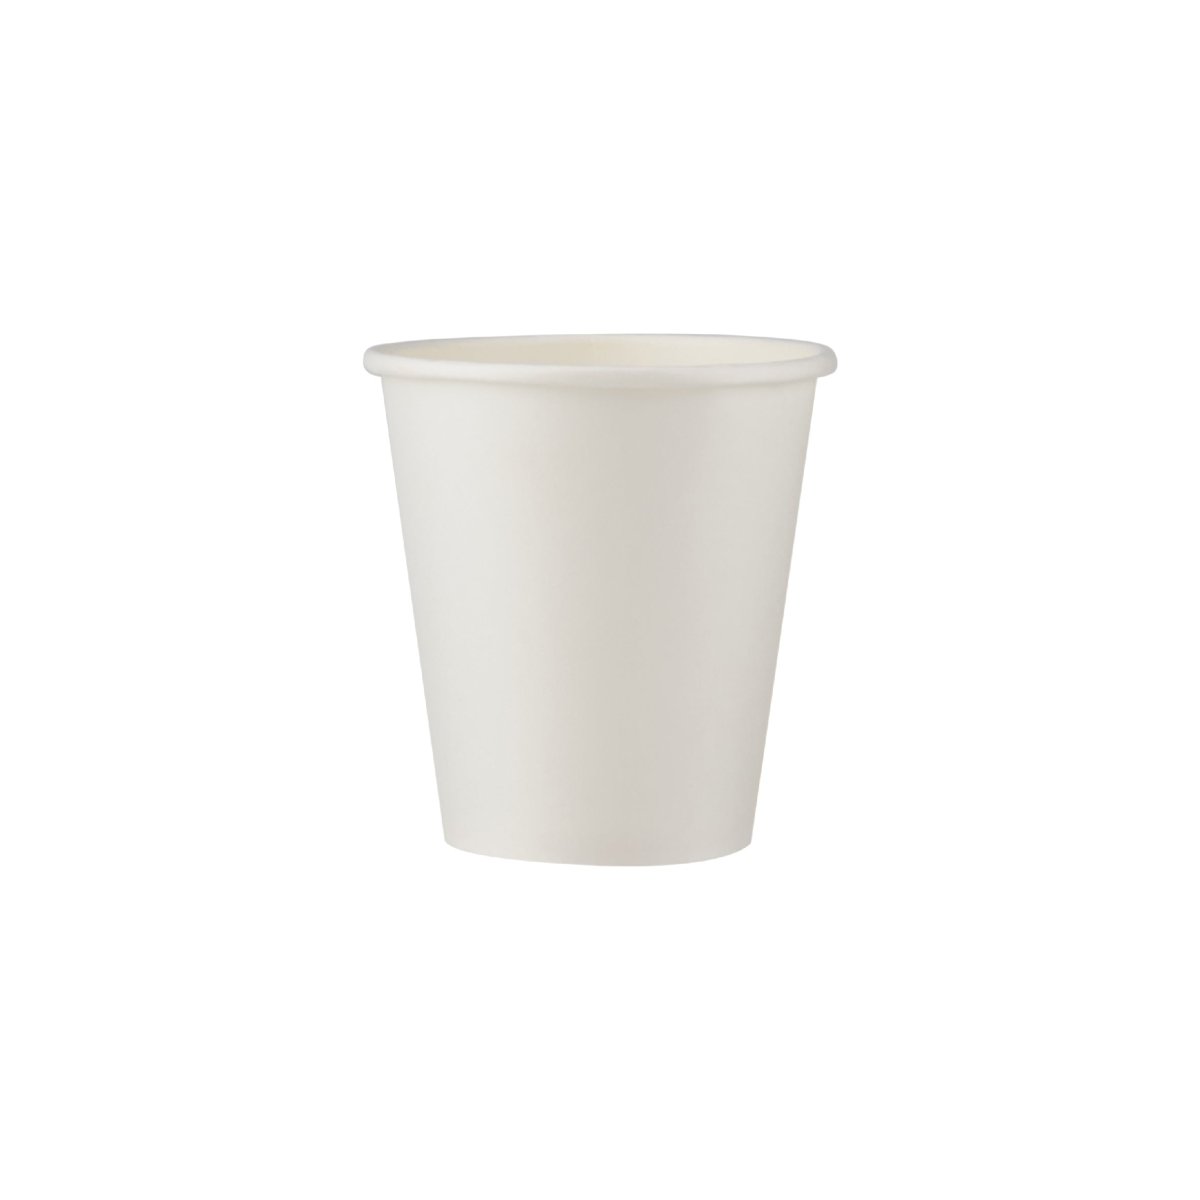 Heavy Duty White Single Wall Paper Cups - hotpackwebstore.com - Single Wall Paper Cups